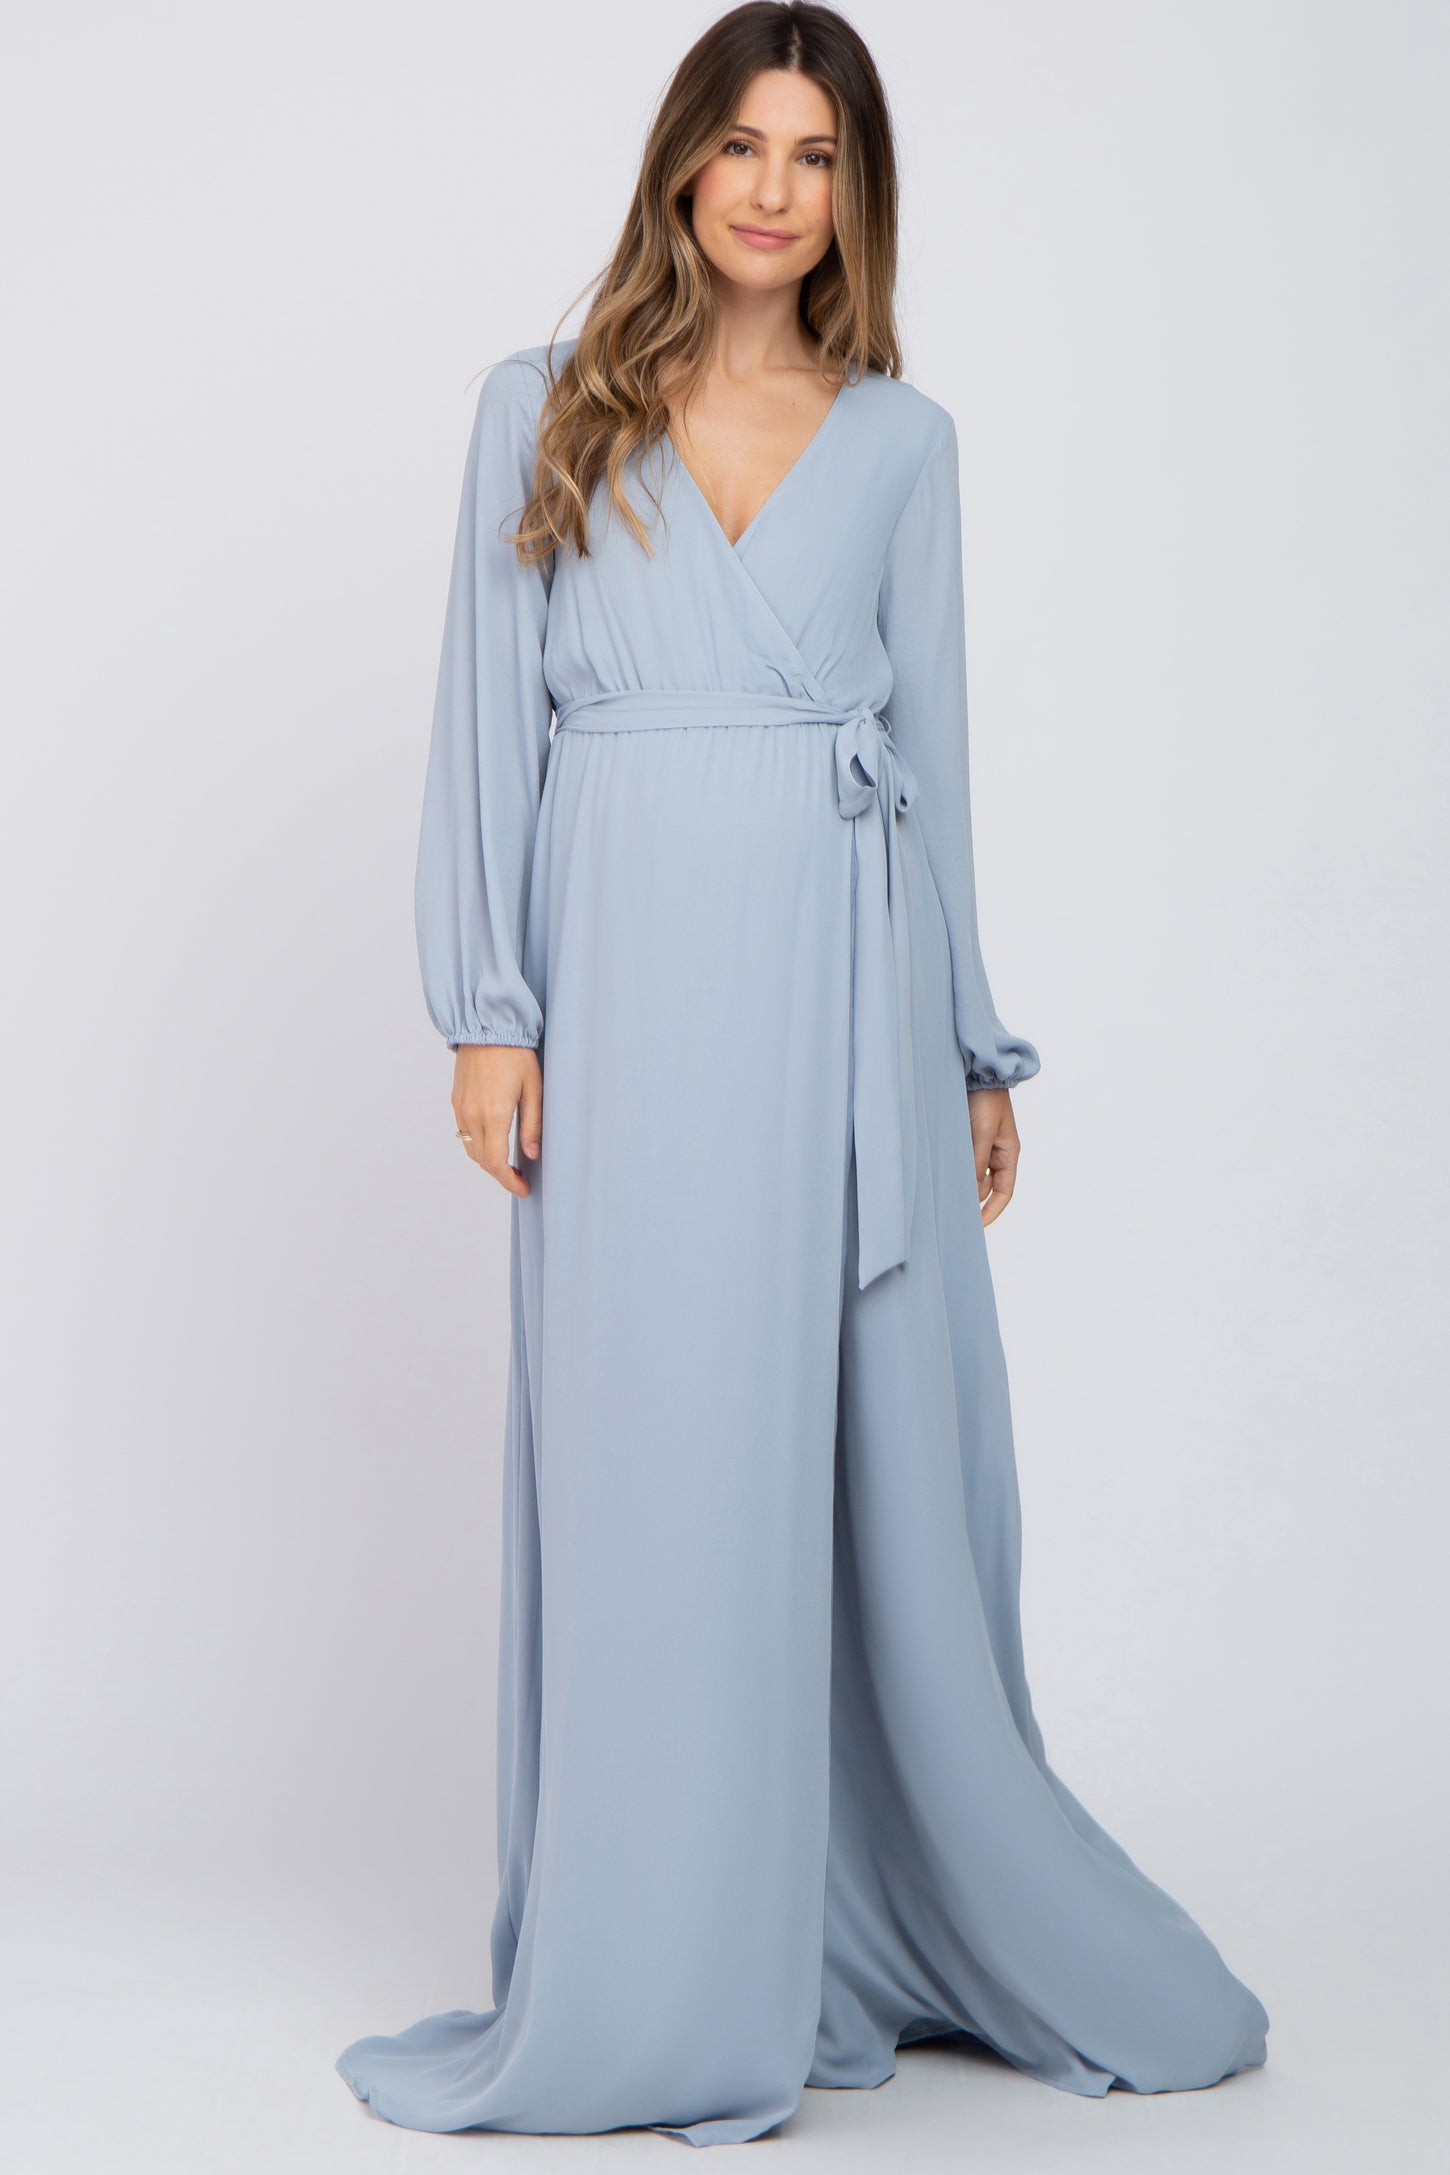 Light Blue Wrap Front Chiffon Maternity Gown– PinkBlush